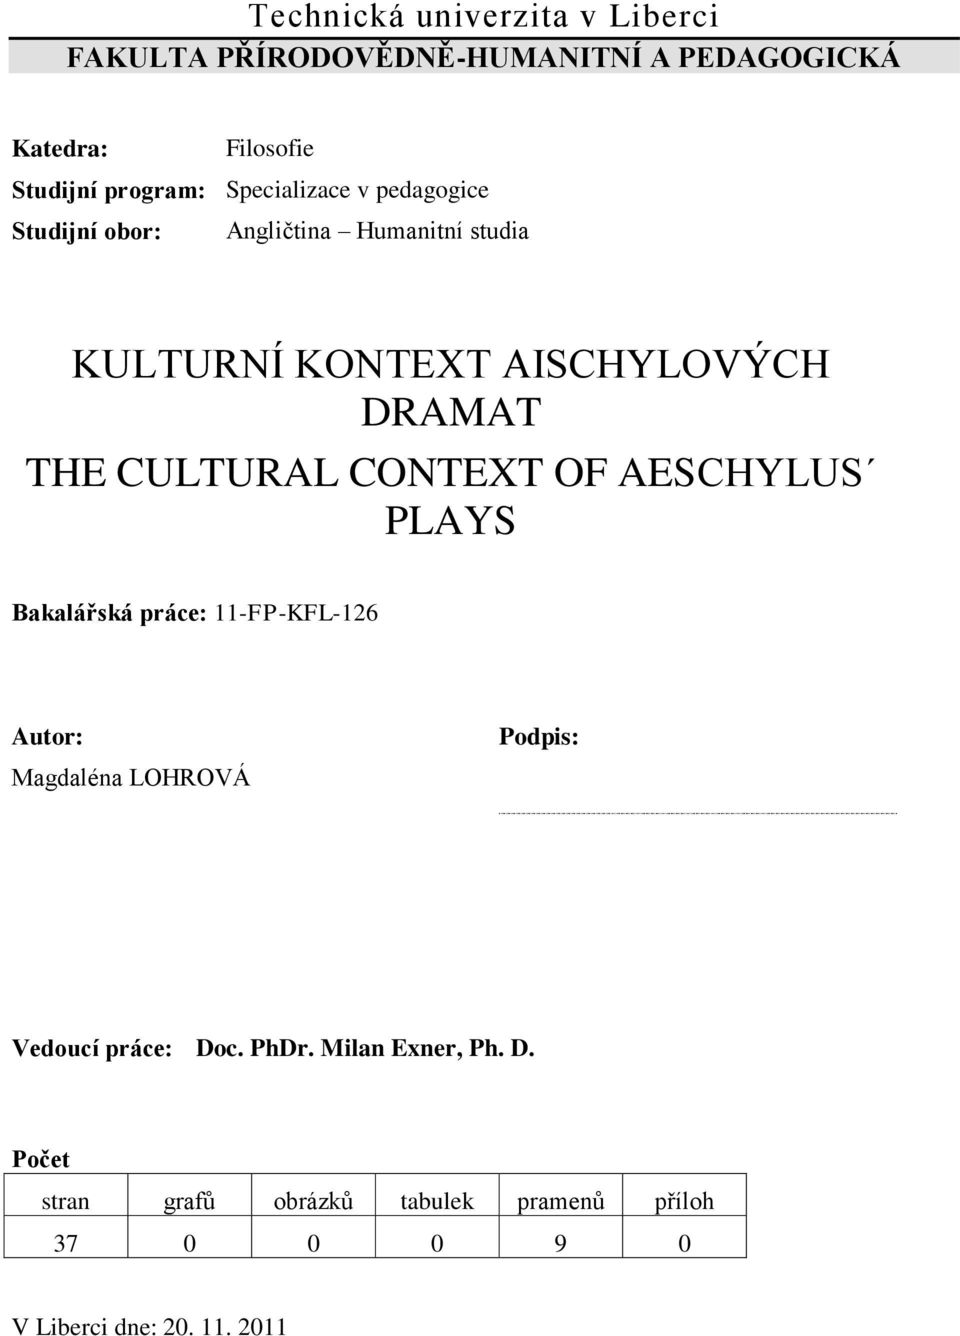 CULTURAL CONTEXT OF AESCHYLUS PLAYS Bakalářská práce: 11-FP-KFL-126 Autor: Magdaléna LOHROVÁ Podpis: Vedoucí